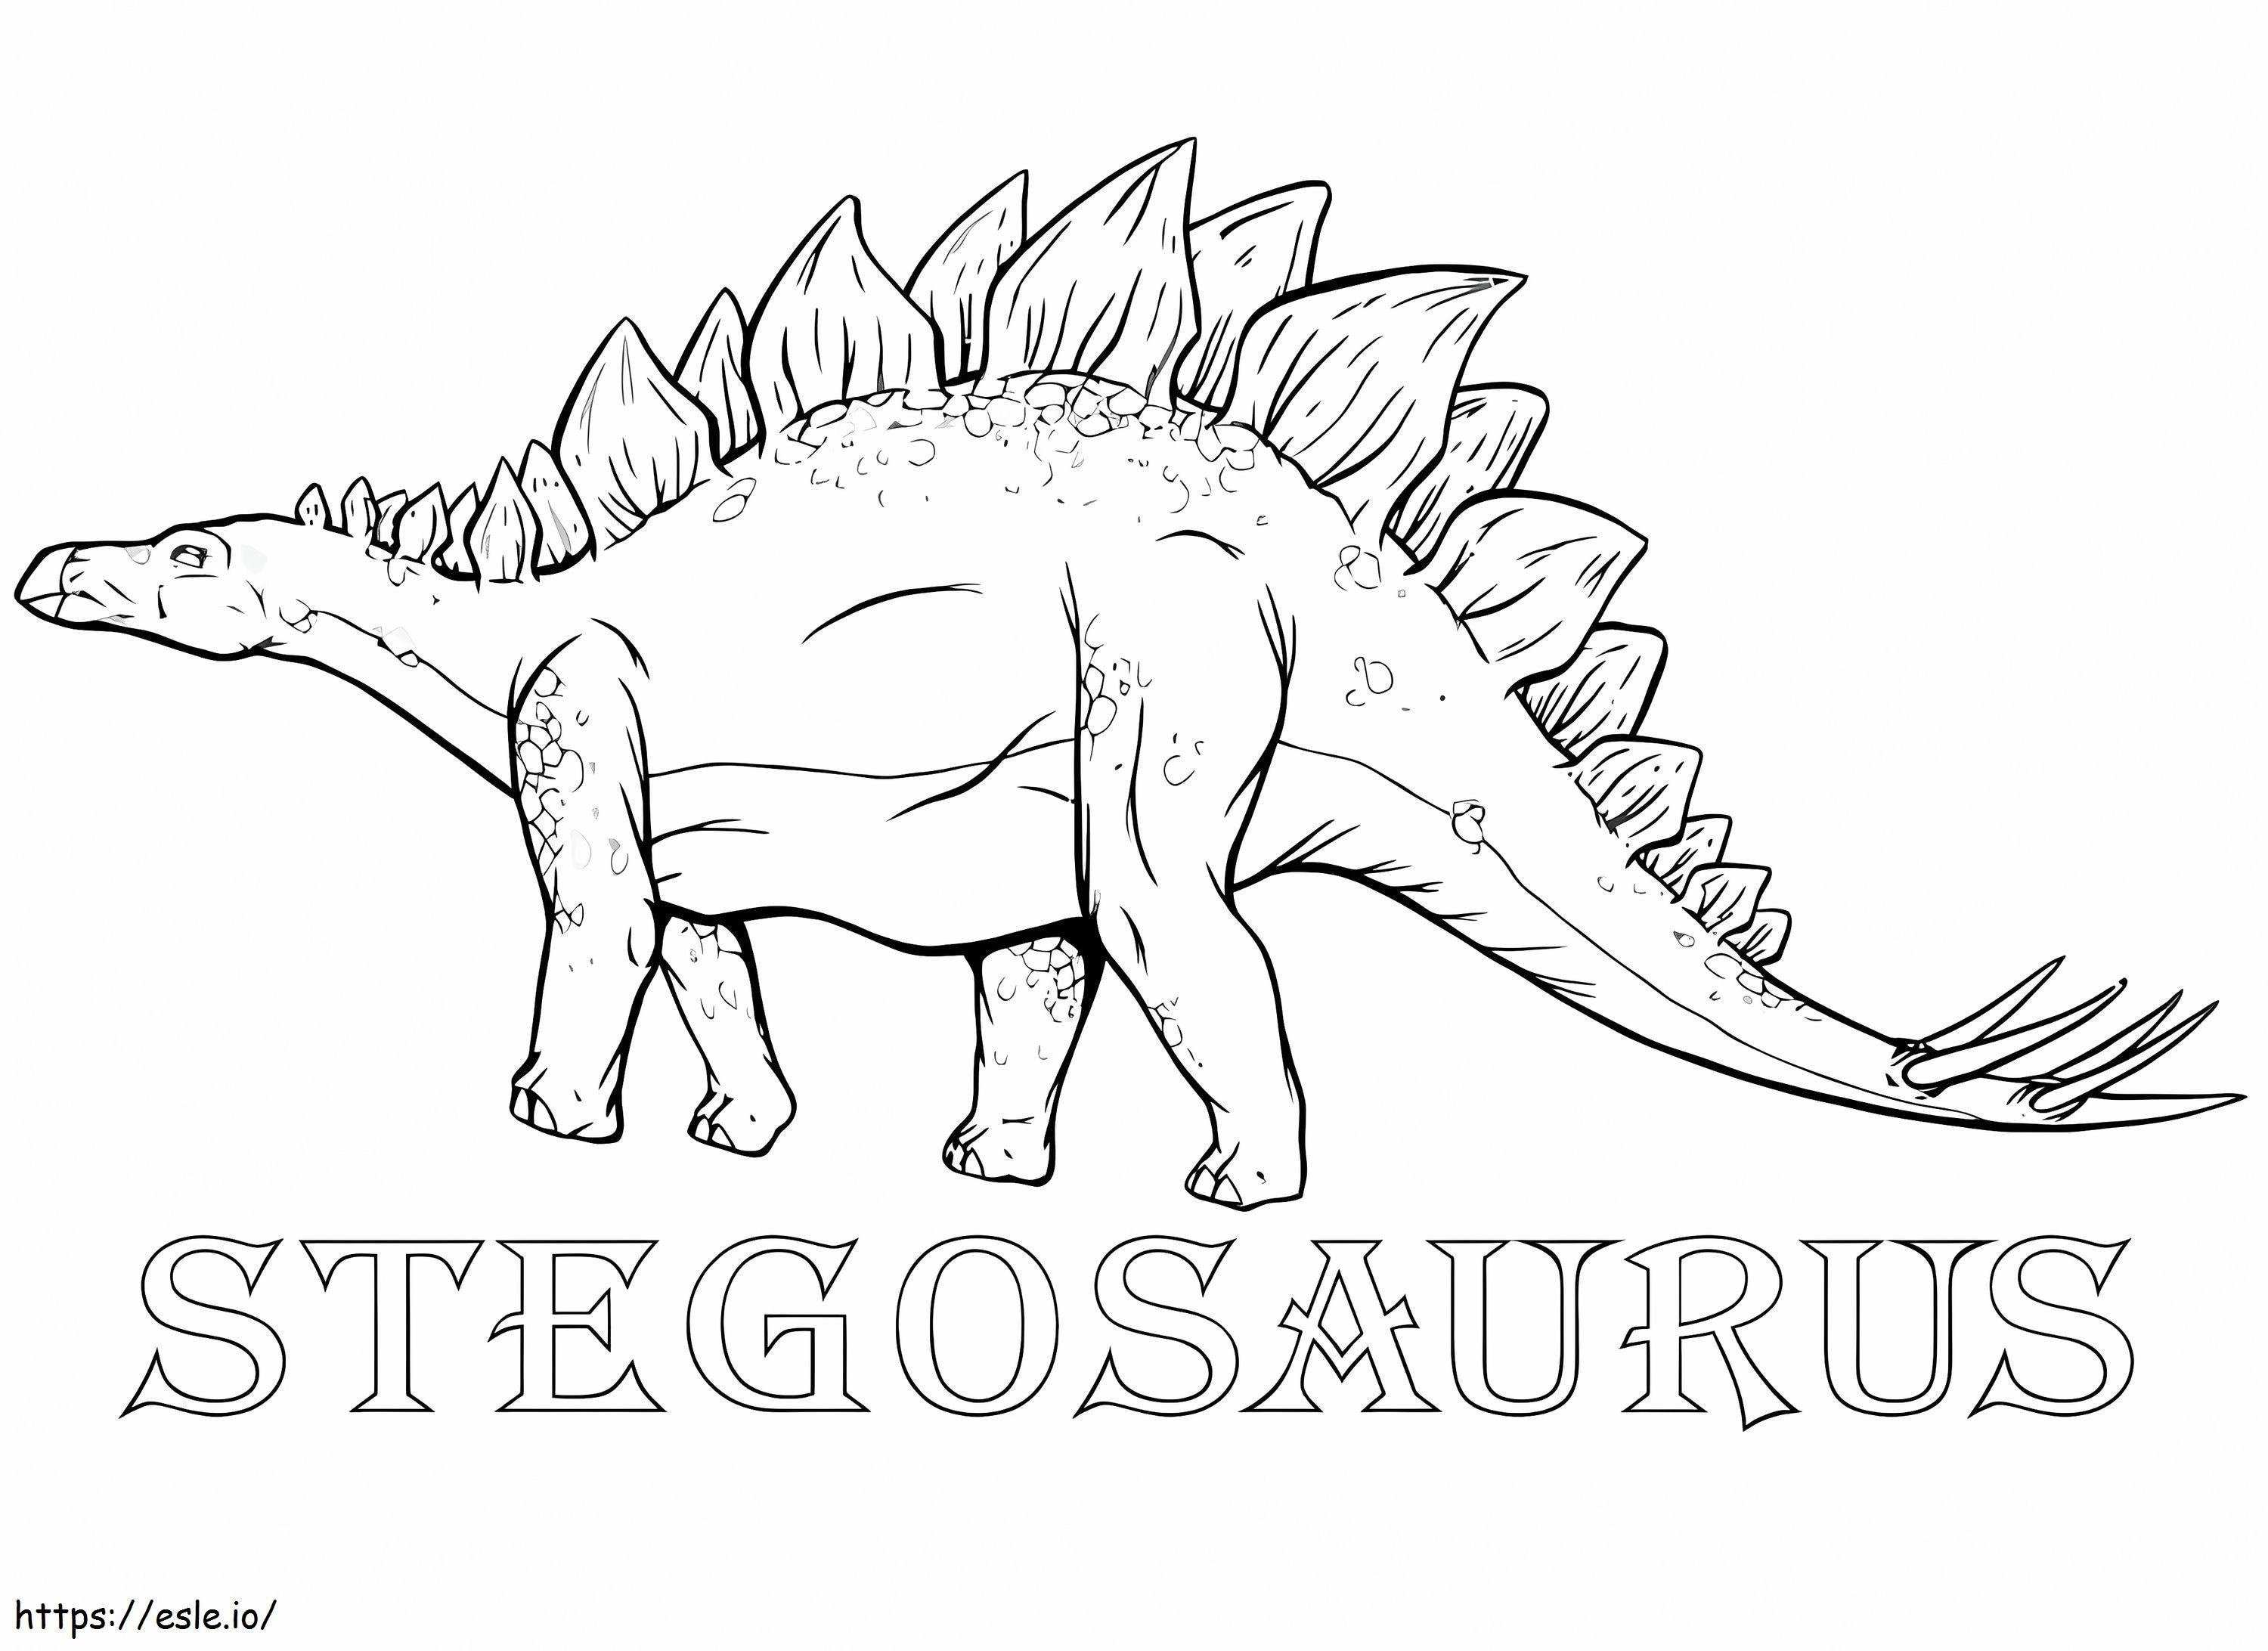 Stegosauro 6 da colorare